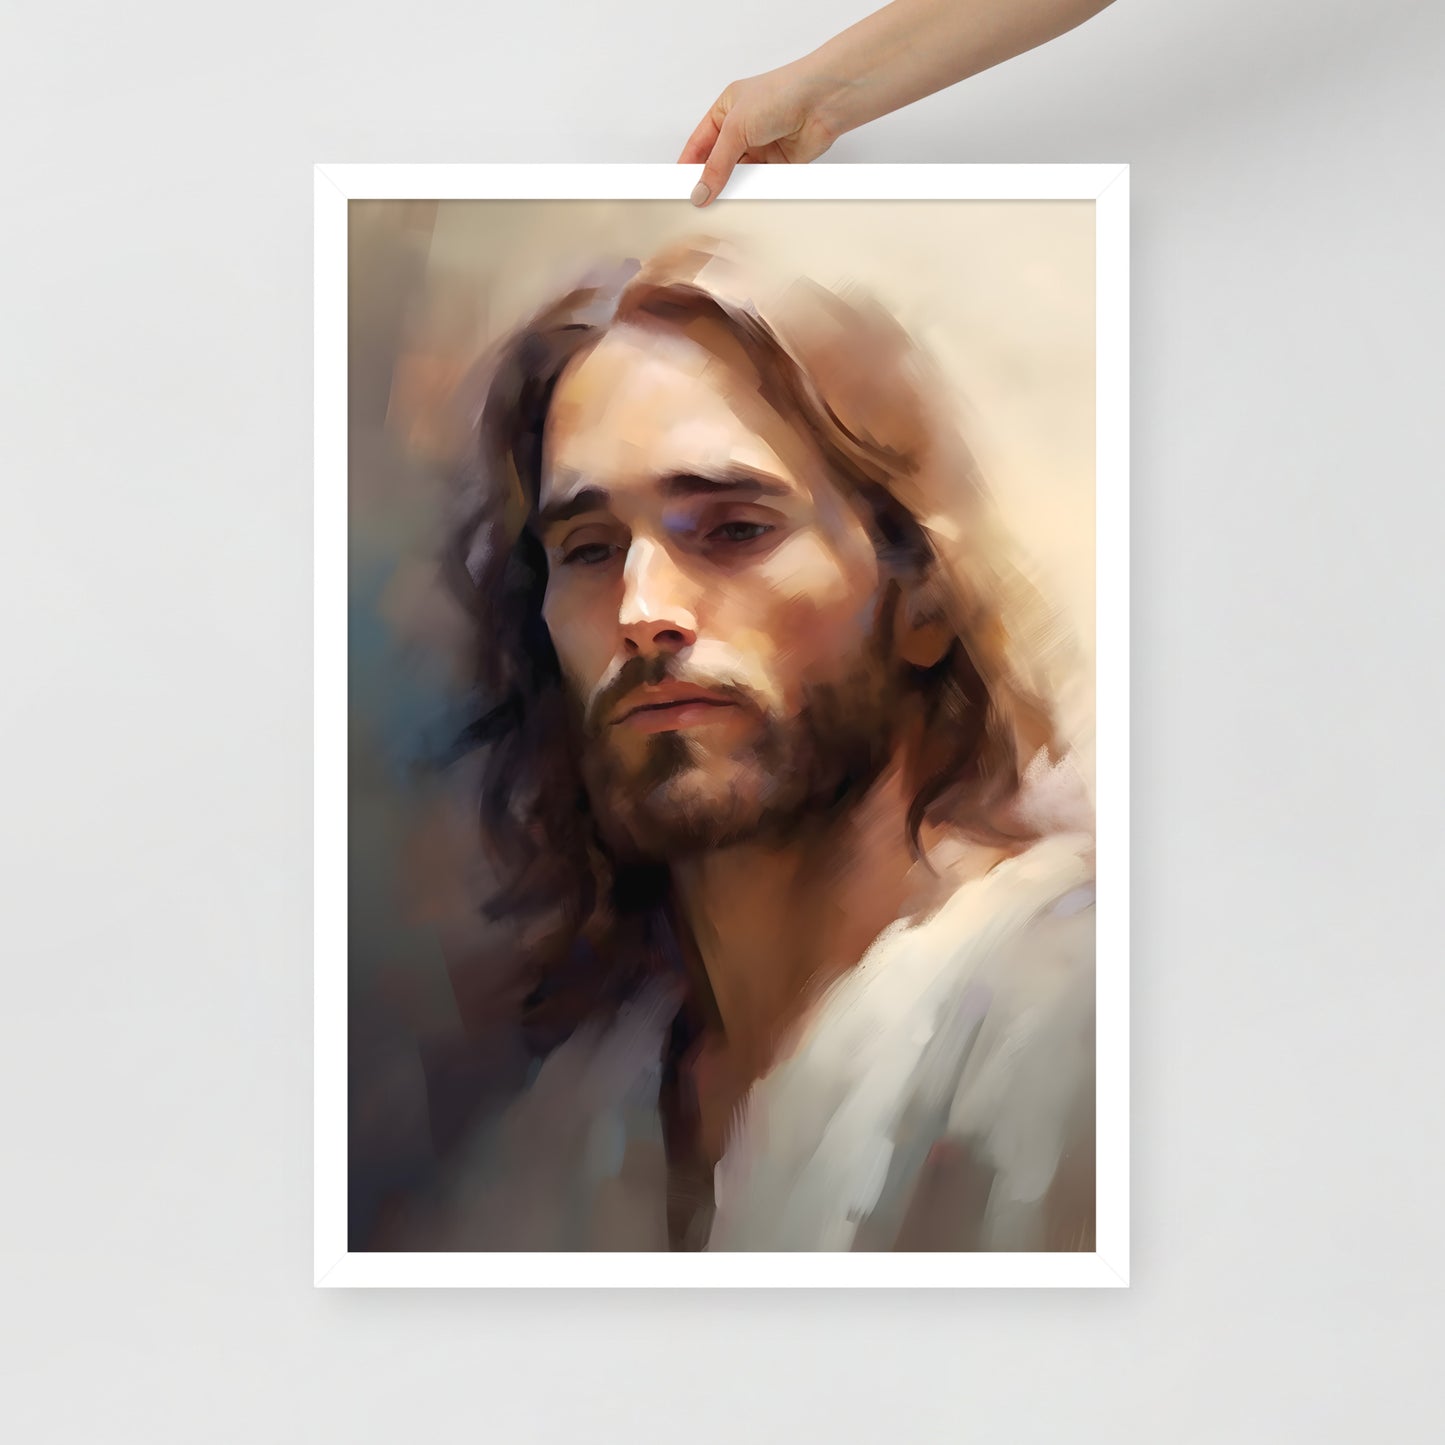 Poster encadré : Jésus peinture